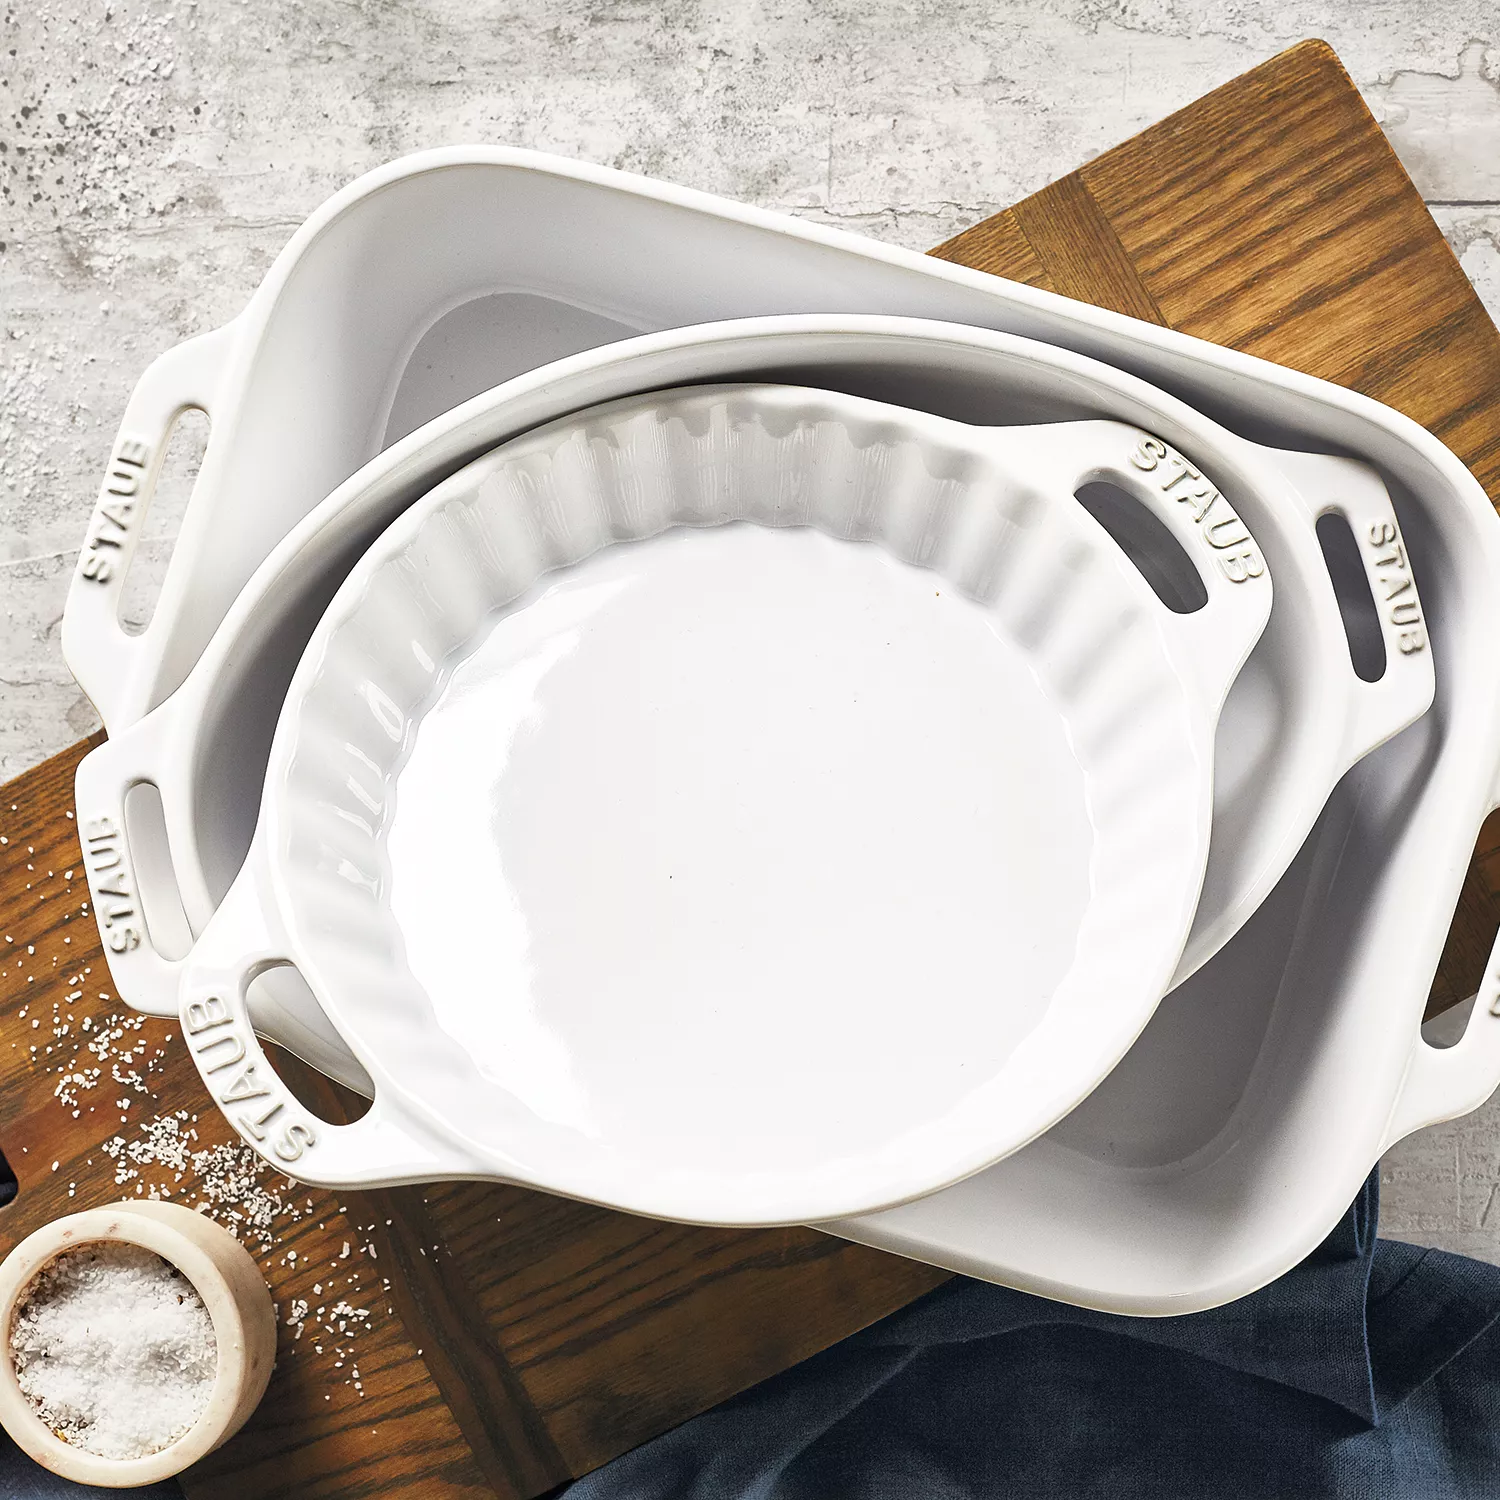 Staub Ceramics 3-pc Rectangular Baking Dish Set - Rustic Turquoise